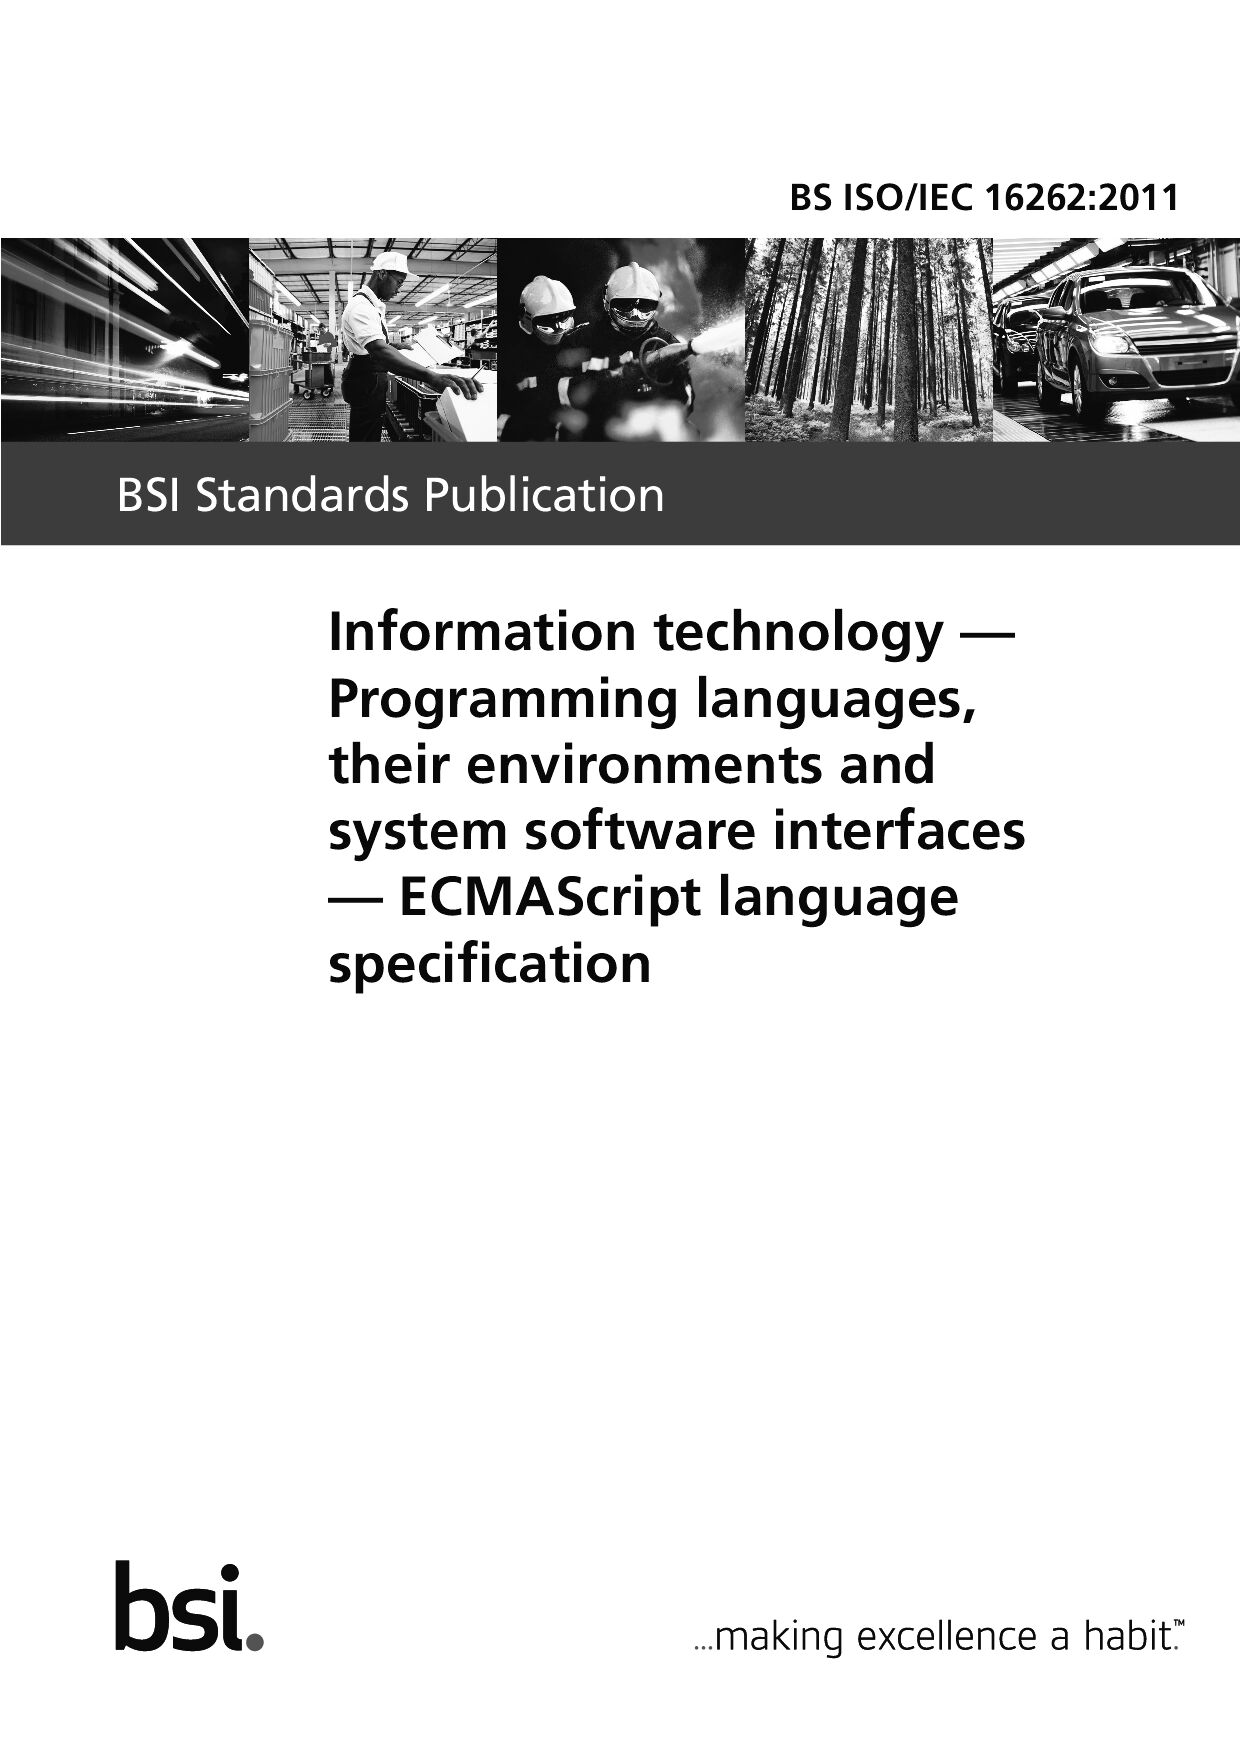 BS ISO/IEC 16262:2011封面图